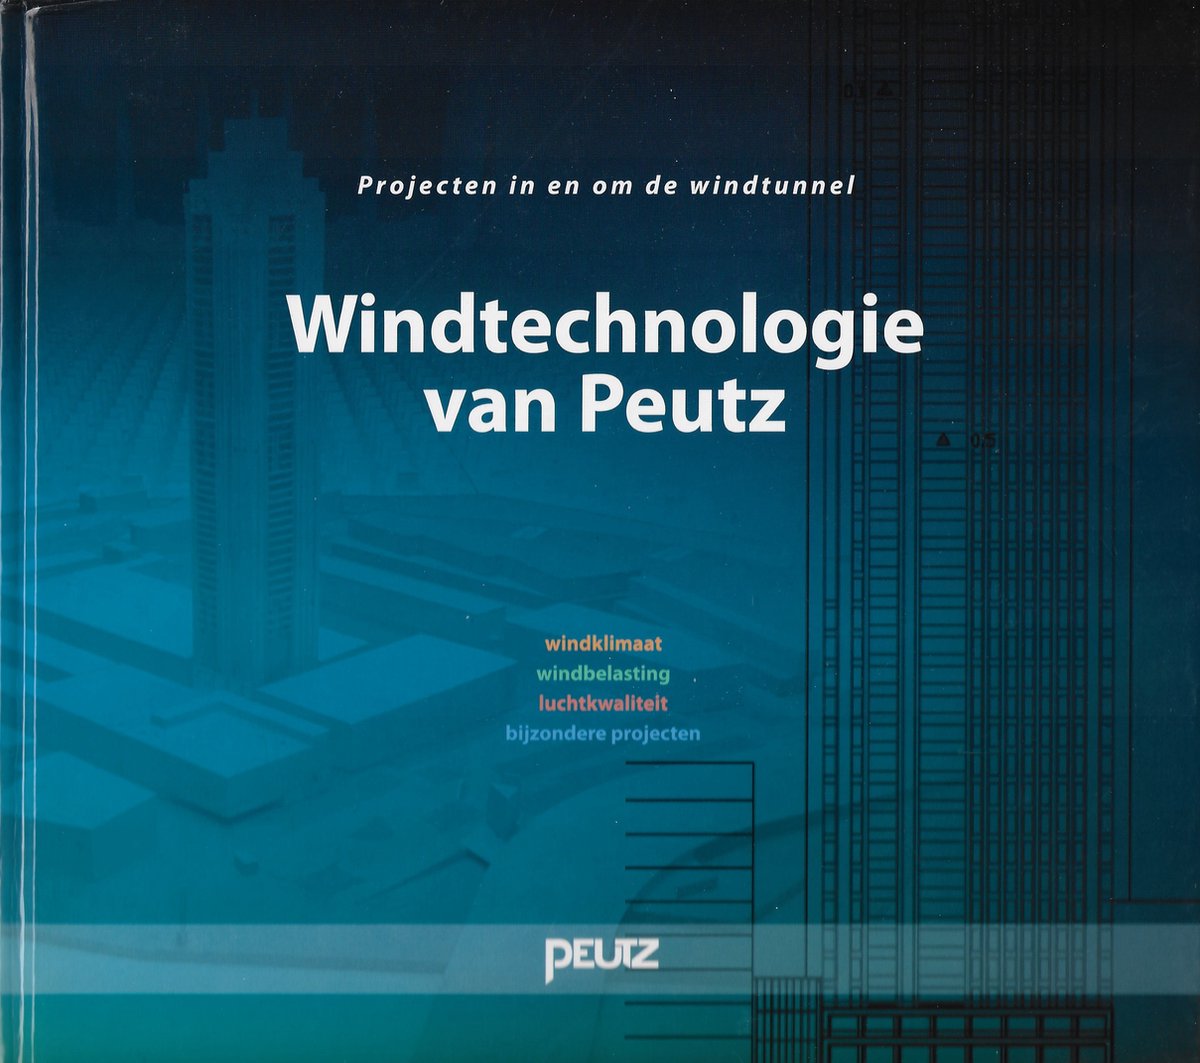 Windtechnologie van Peutz